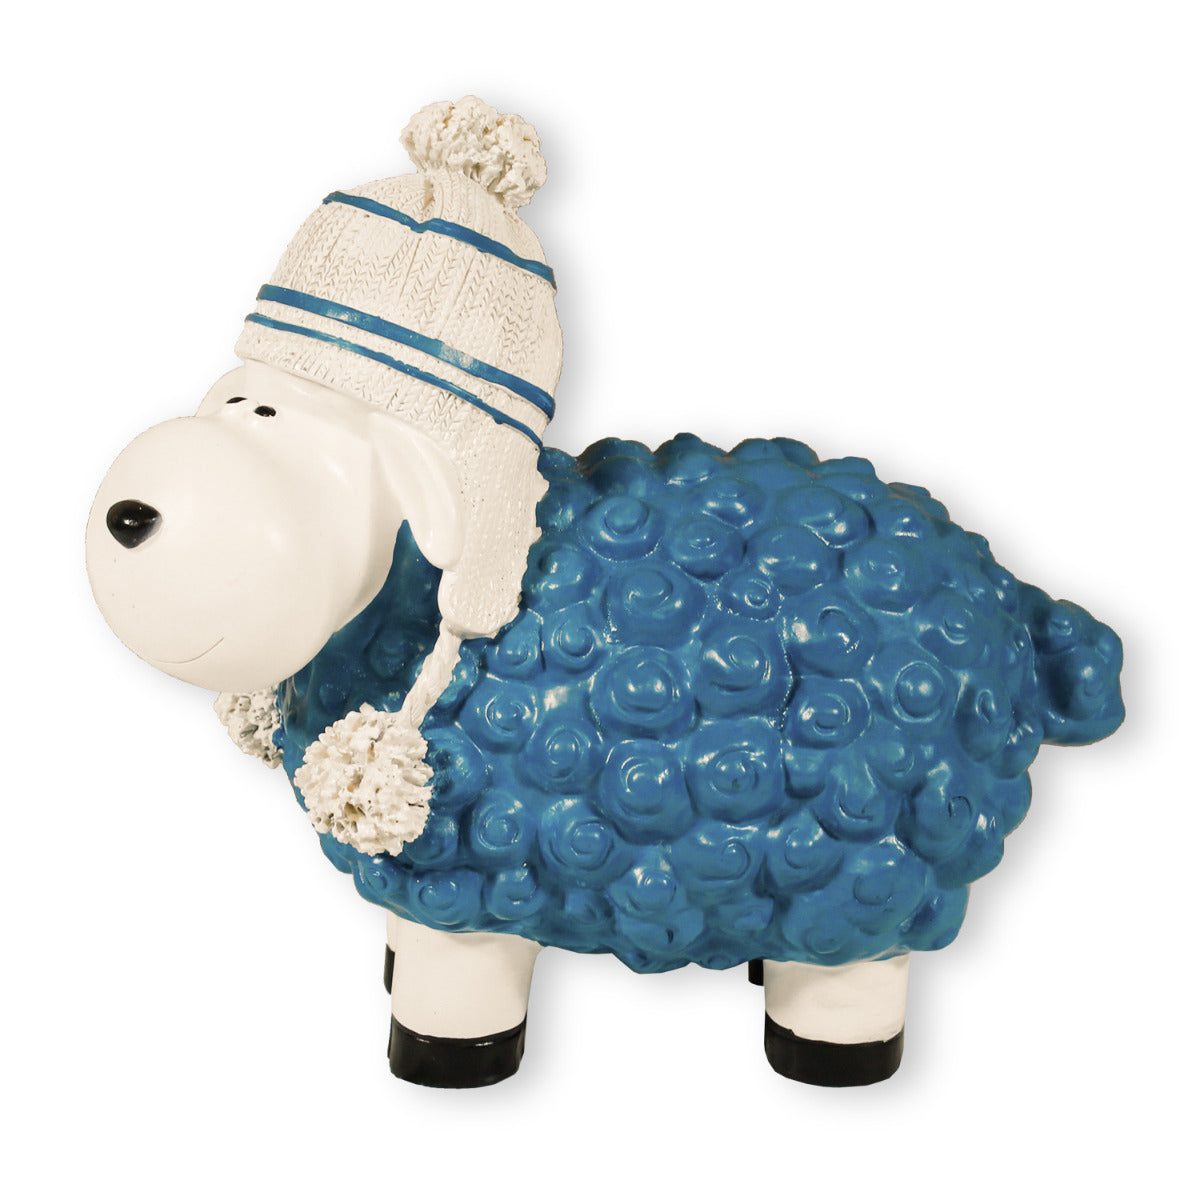 Buntes Deko Schaf blau mit Mütze Gartenfigur Schaf Dekofigur Schaf lustige Schafe